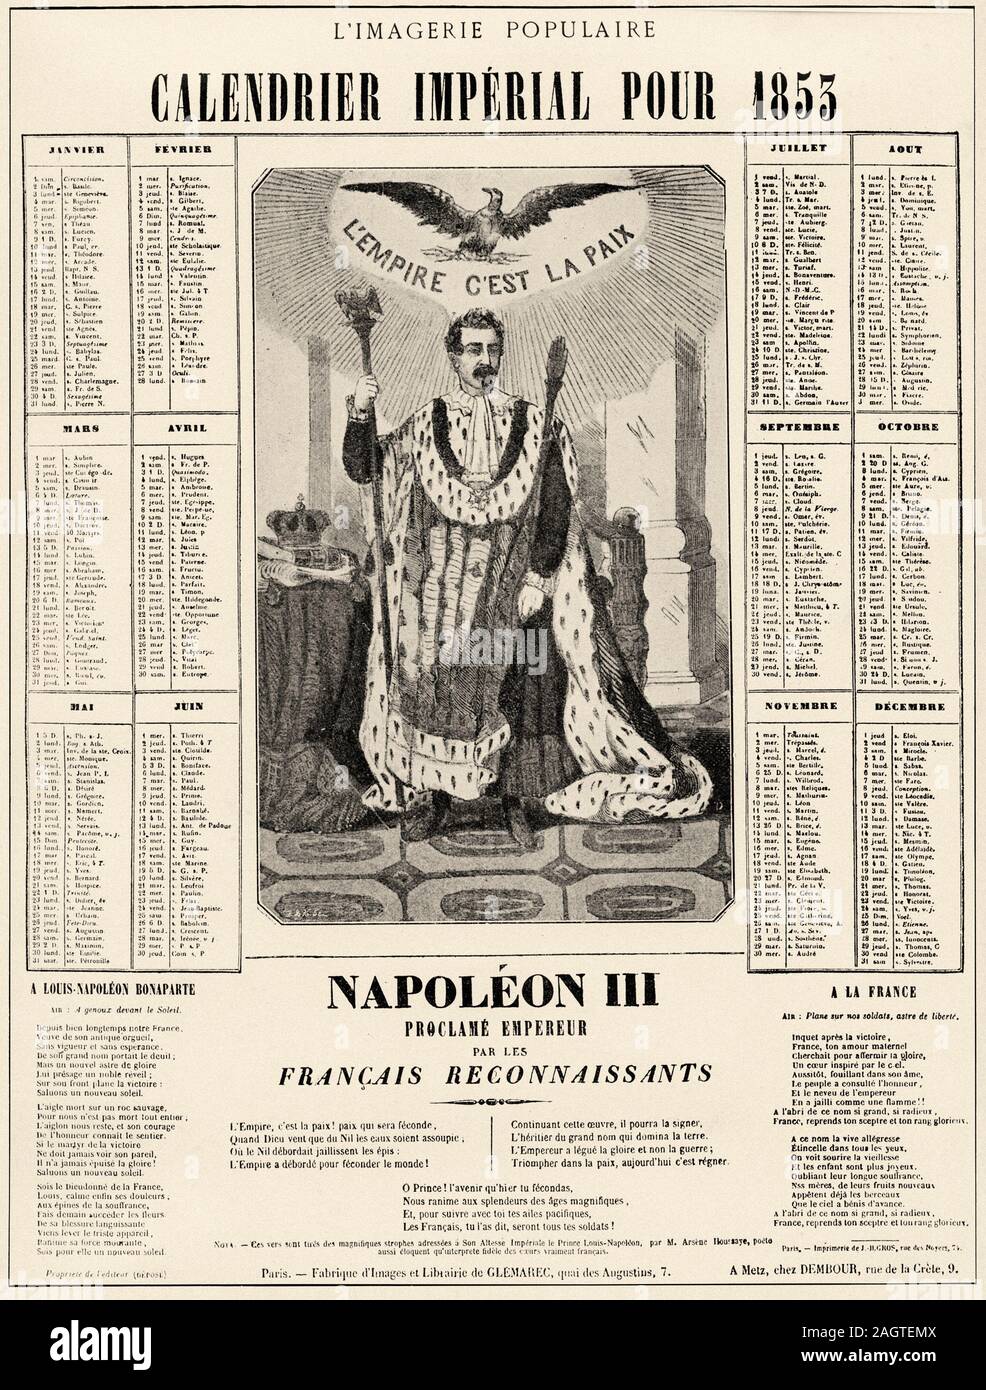 Calendario Imperial para 1853. Napoleón III se proclama emperador francés por el agradecido. La historia de Francia, antigua ilustración grabada la imagen del libro Hi Foto de stock